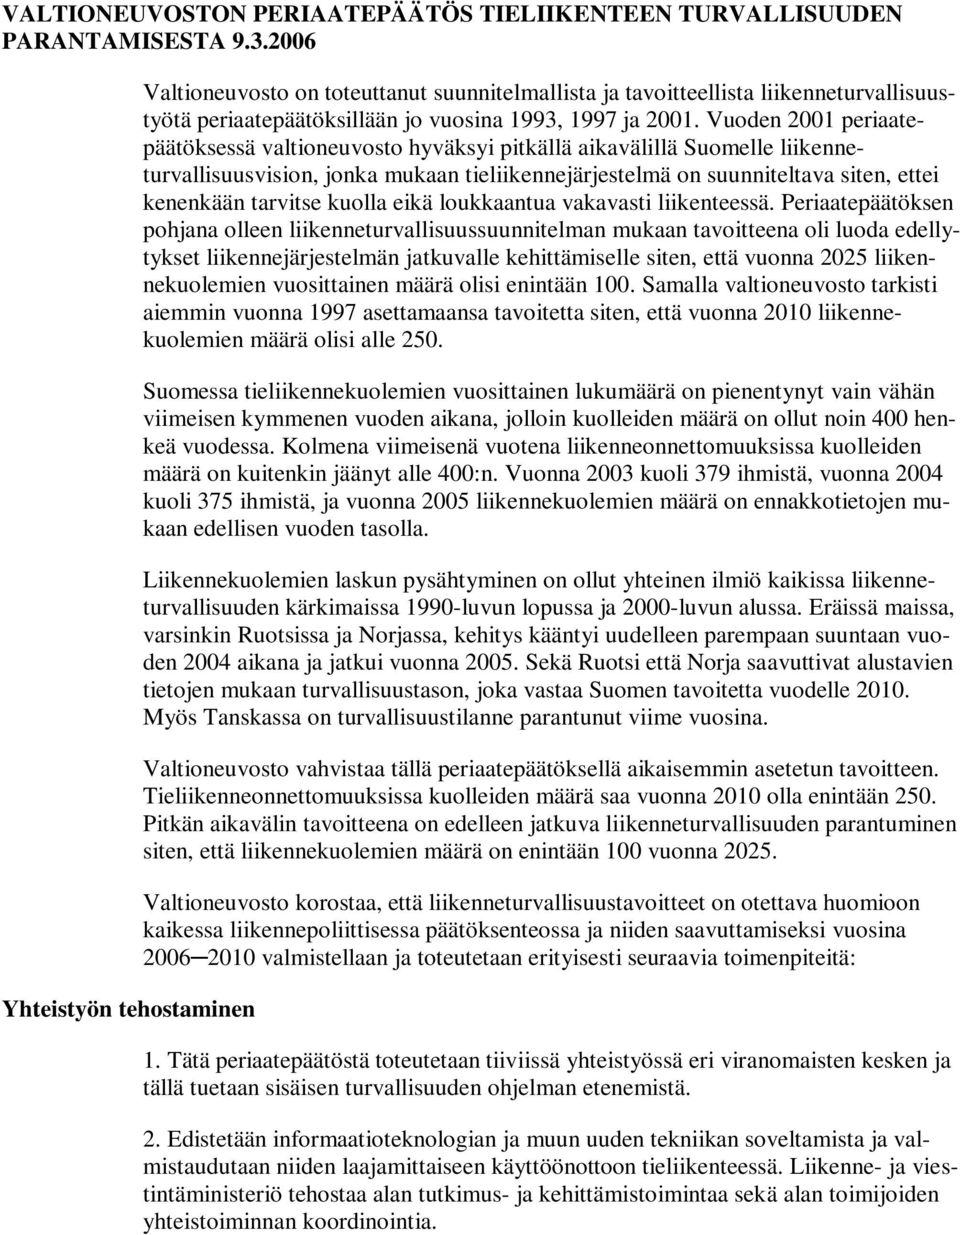 Vuoden 2001 periaatepäätöksessä valtioneuvosto hyväksyi pitkällä aikavälillä Suomelle liikenneturvallisuusvision, jonka mukaan tieliikennejärjestelmä on suunniteltava siten, ettei kenenkään tarvitse